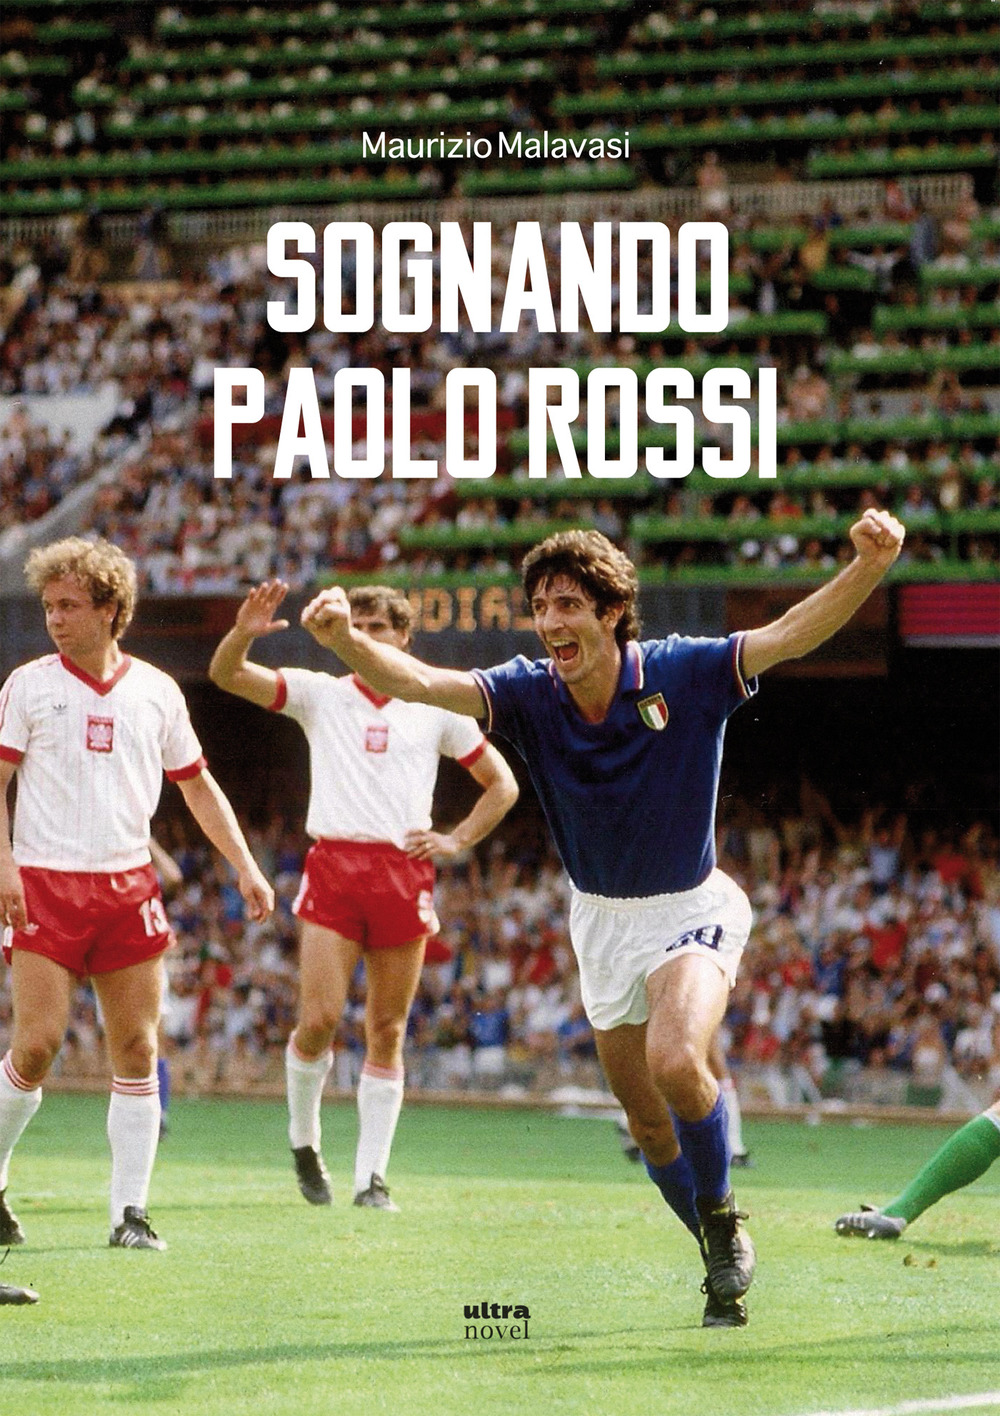 Sognando Paolo Rossi